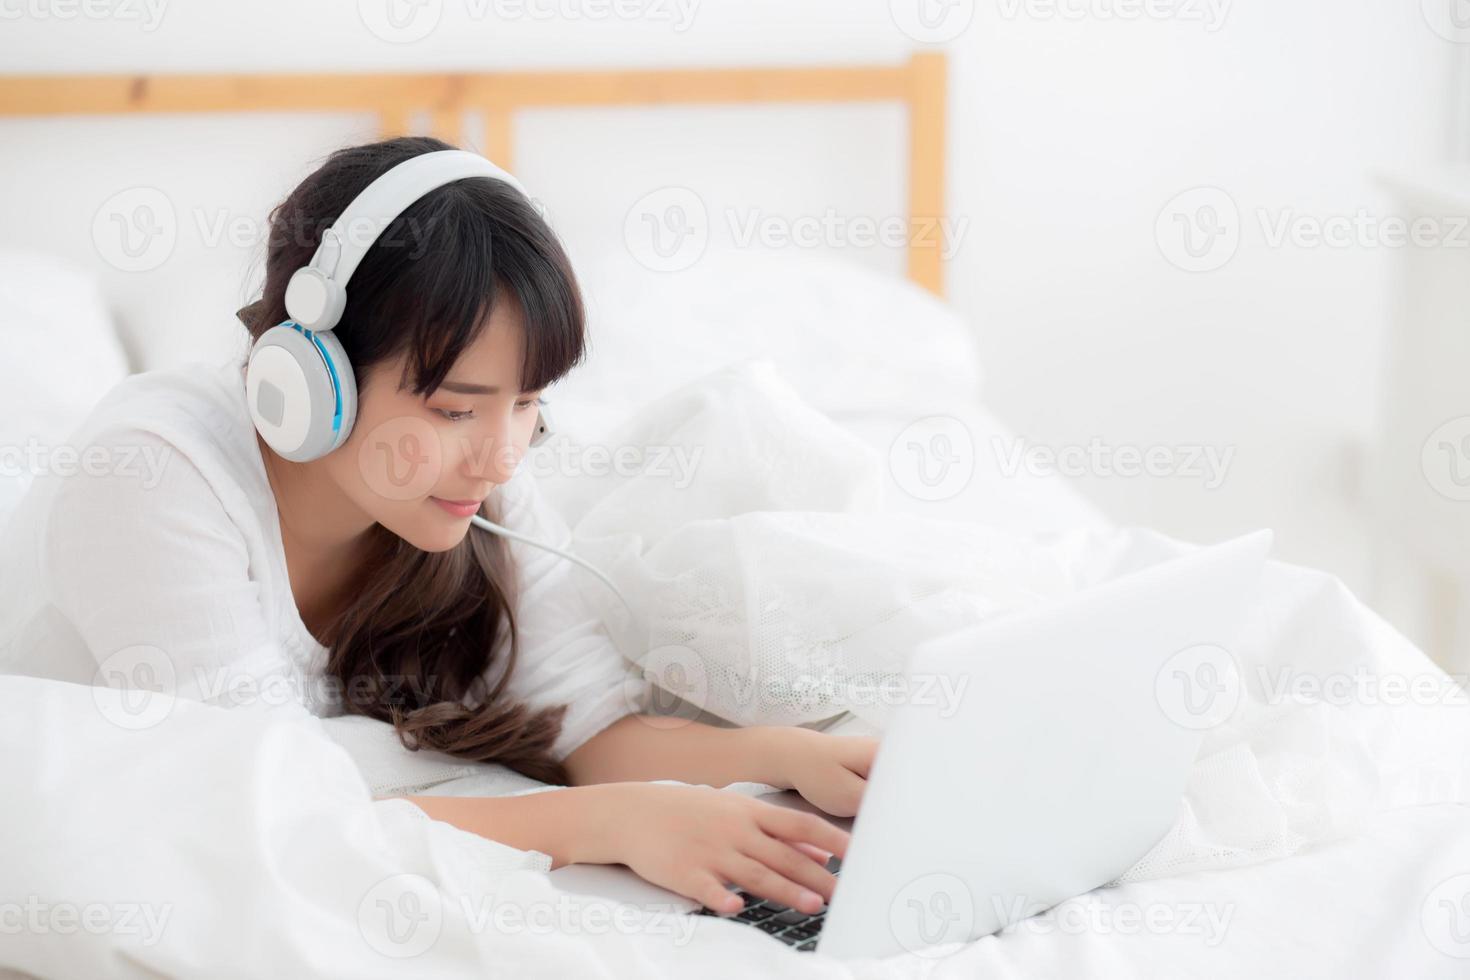 mooie jonge Aziatische vrouw liggend in de slaapkamer met behulp van laptopcomputer met video-oproep chat thuis, meisje begroeten en luisteren en praten messenger, communicatie en lifestyle concept. foto